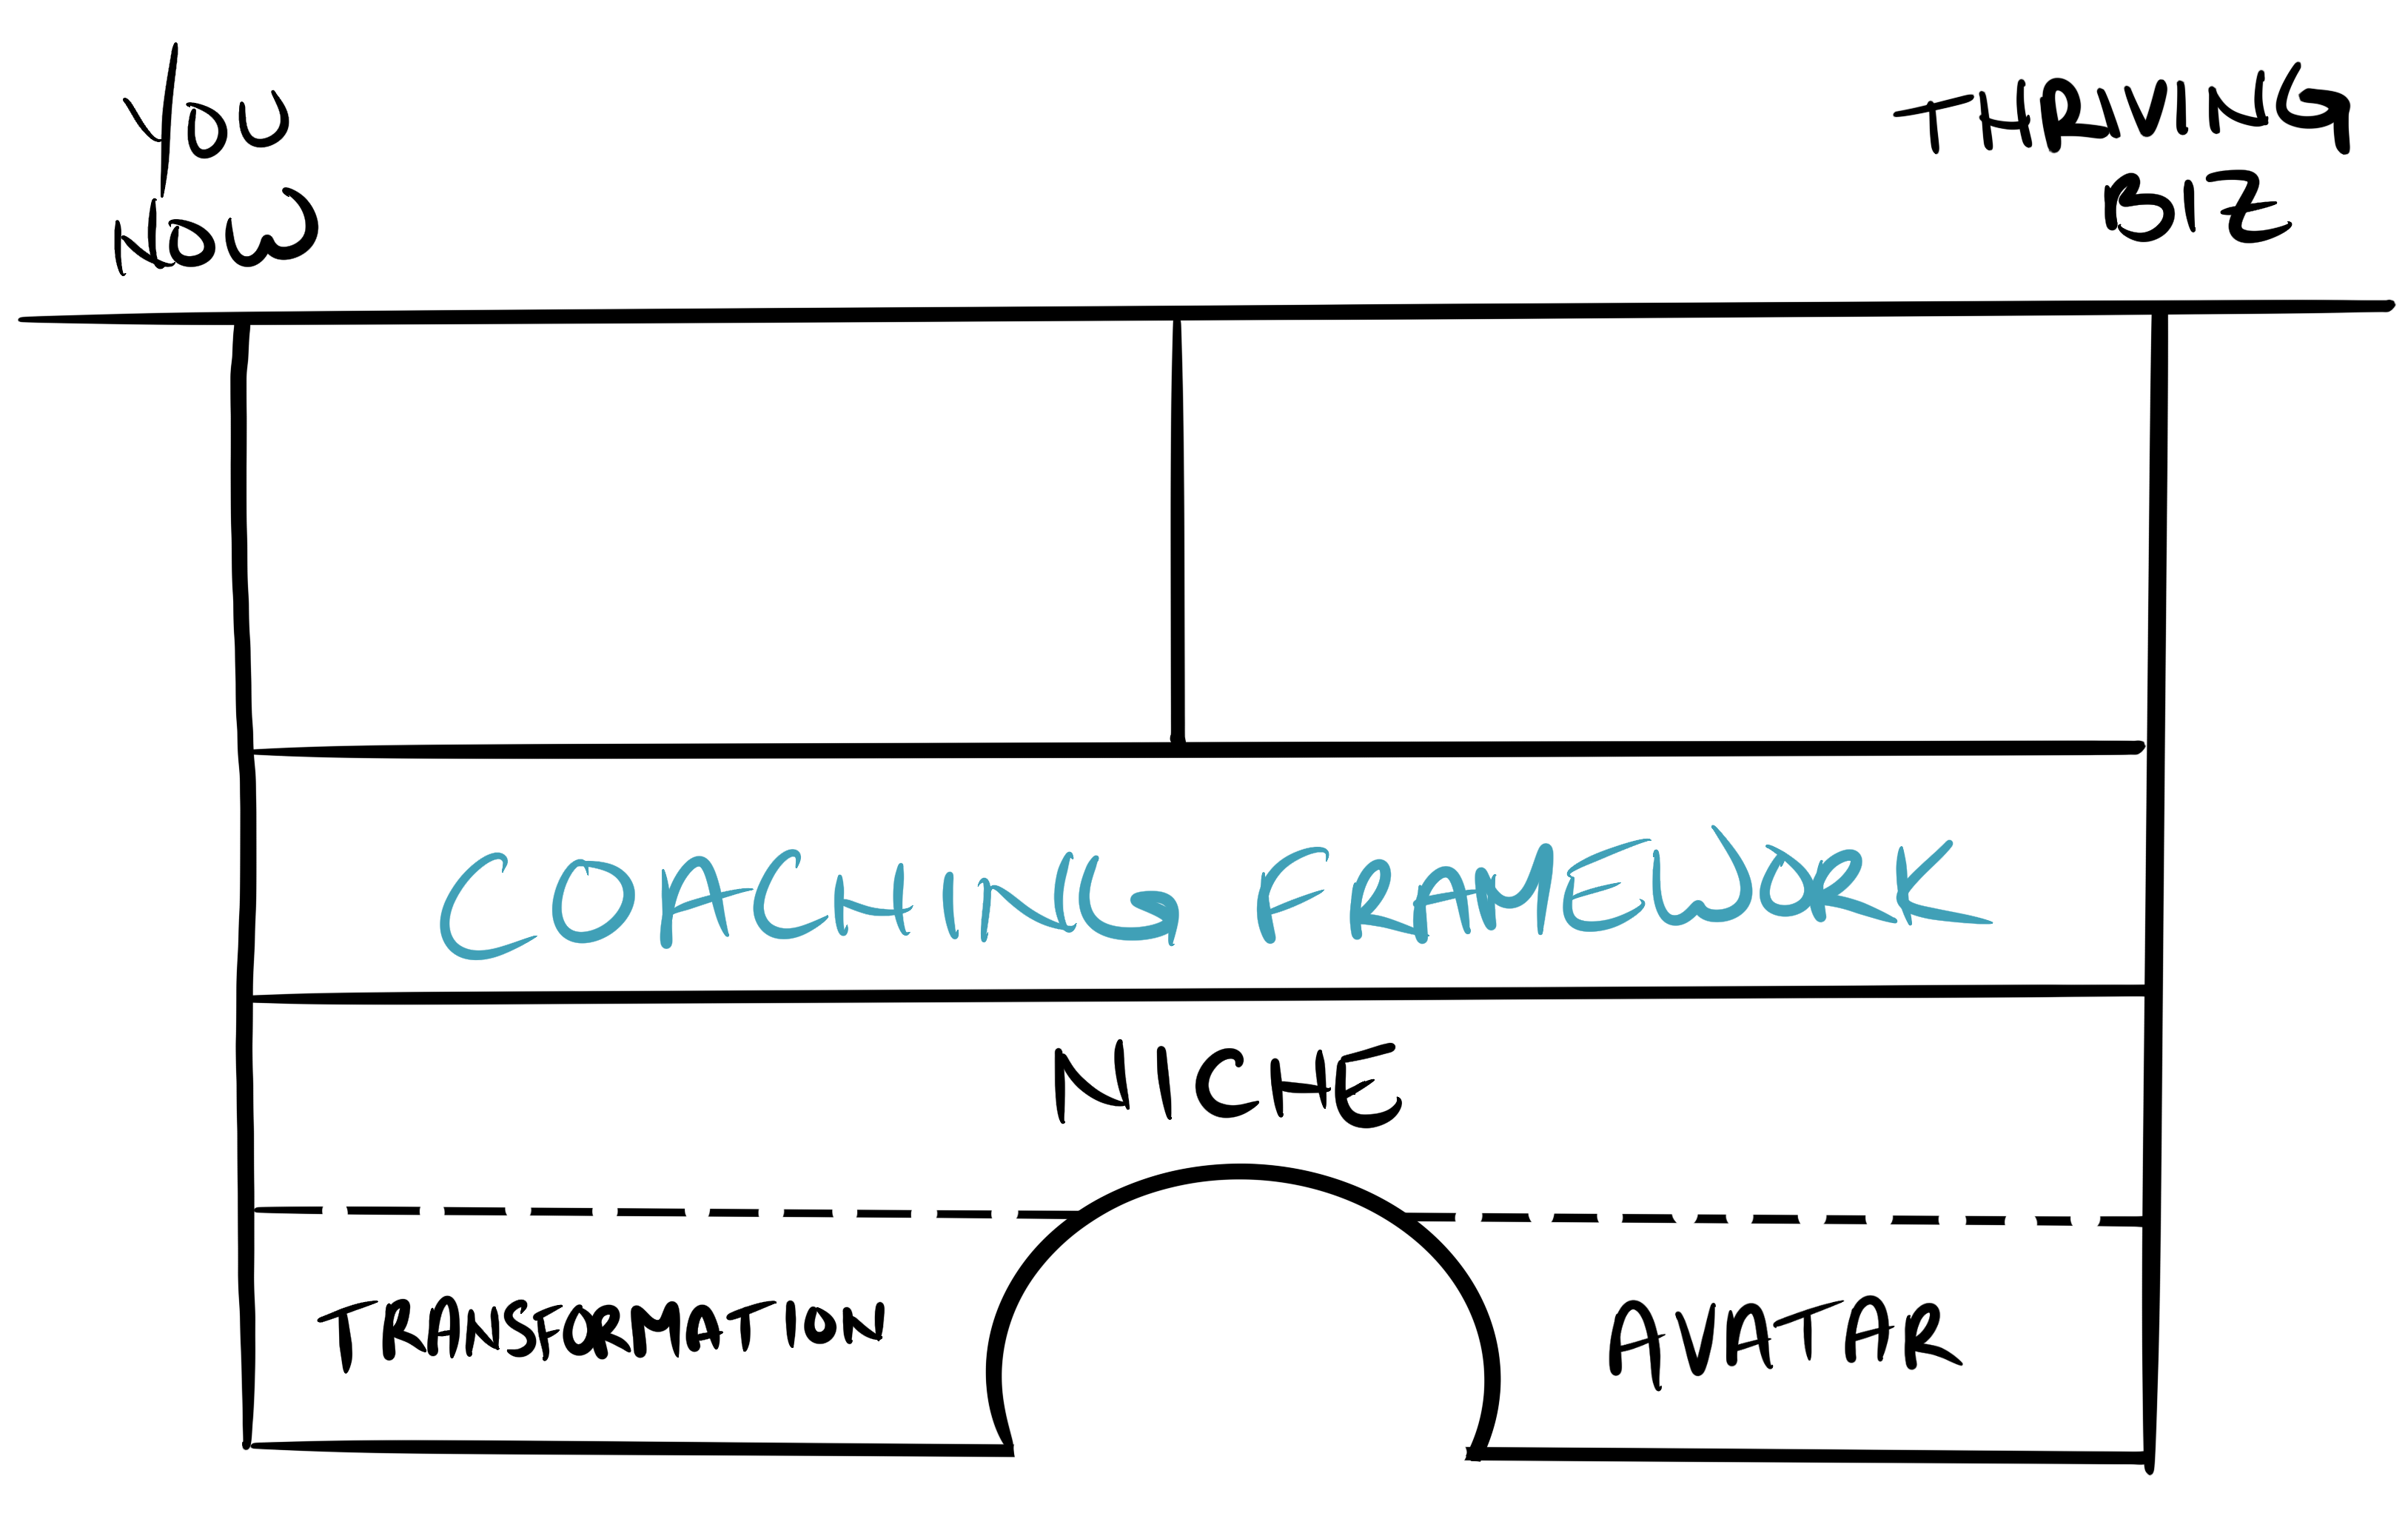 Coaching Framework